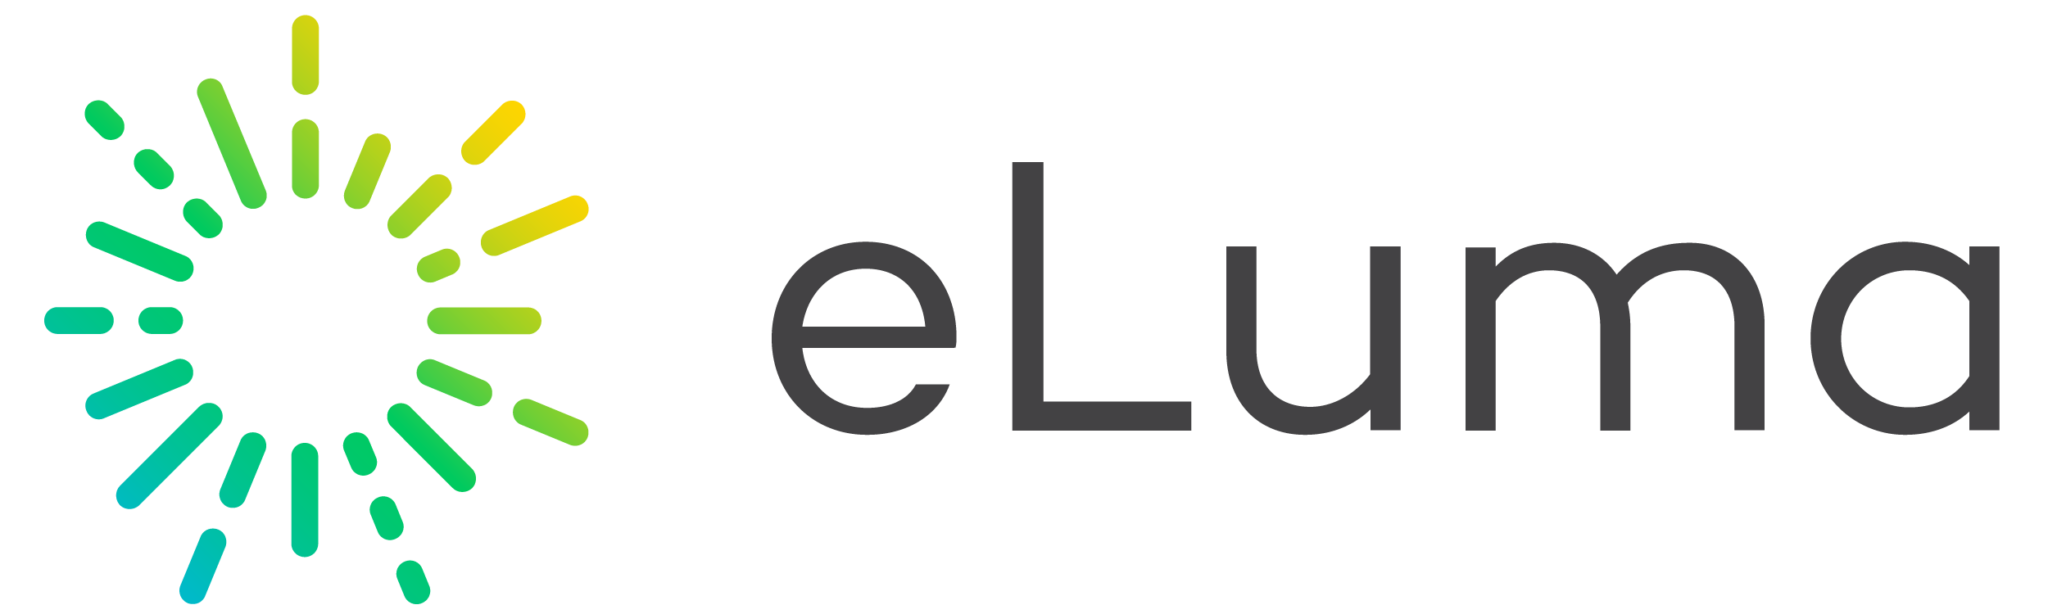 eLuma logo